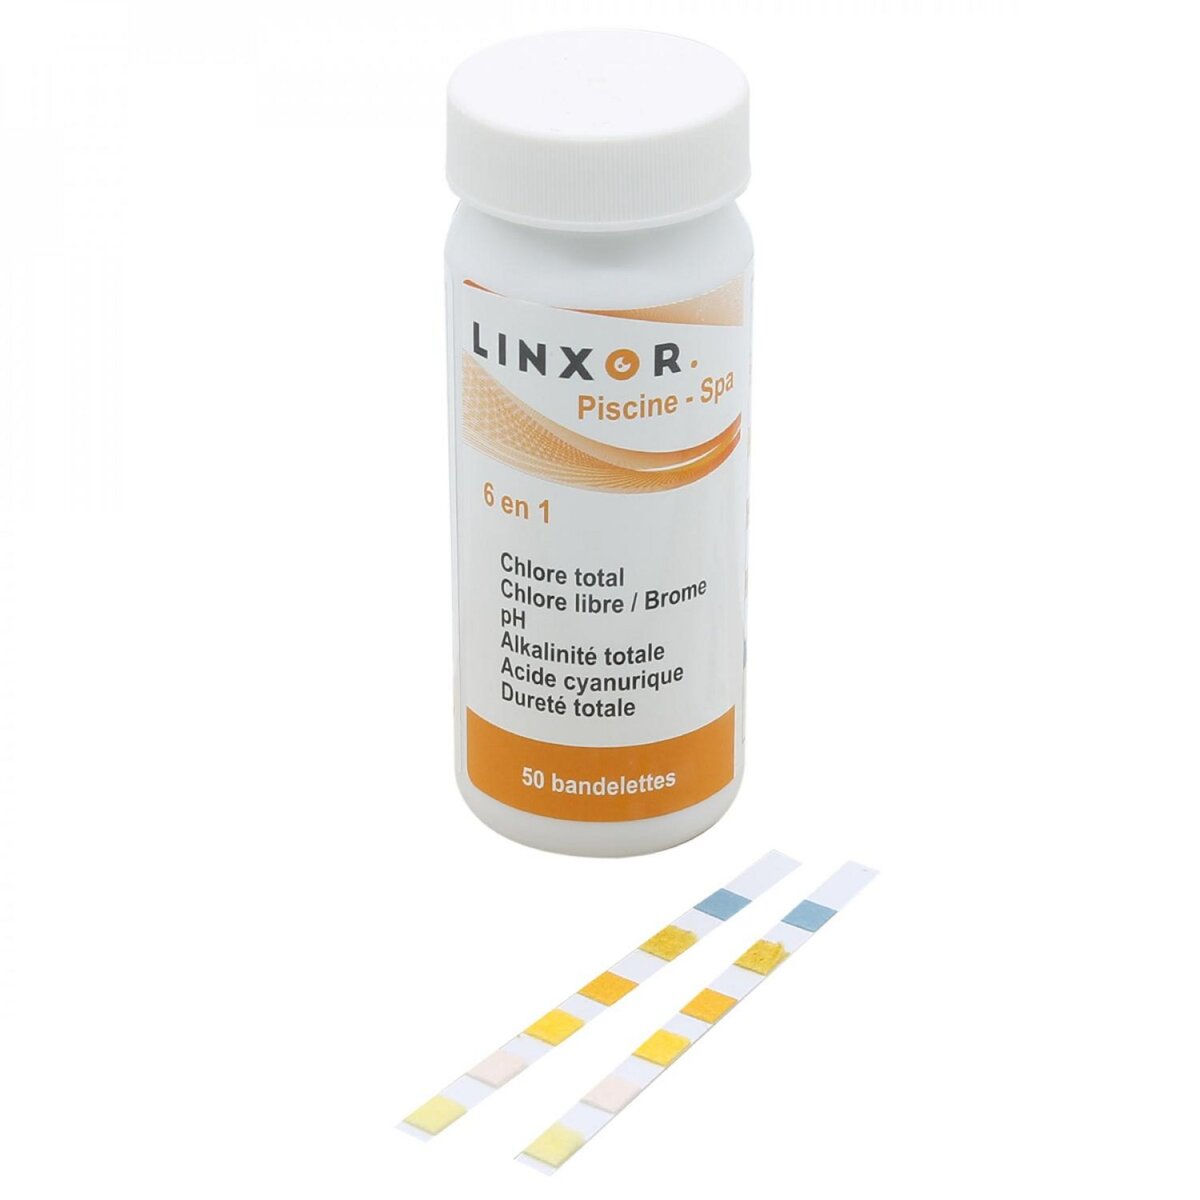 LINXOR Boite de 50 bandelettes d'analyse PH, alcalinité, acide cyanurique, chlore libre, brome et dureté totale - 6 en 1